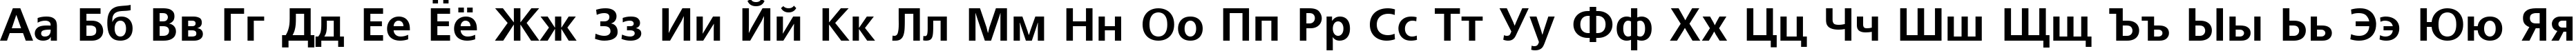 Пример написания русского алфавита шрифтом FreeSet Bold Cyrillic